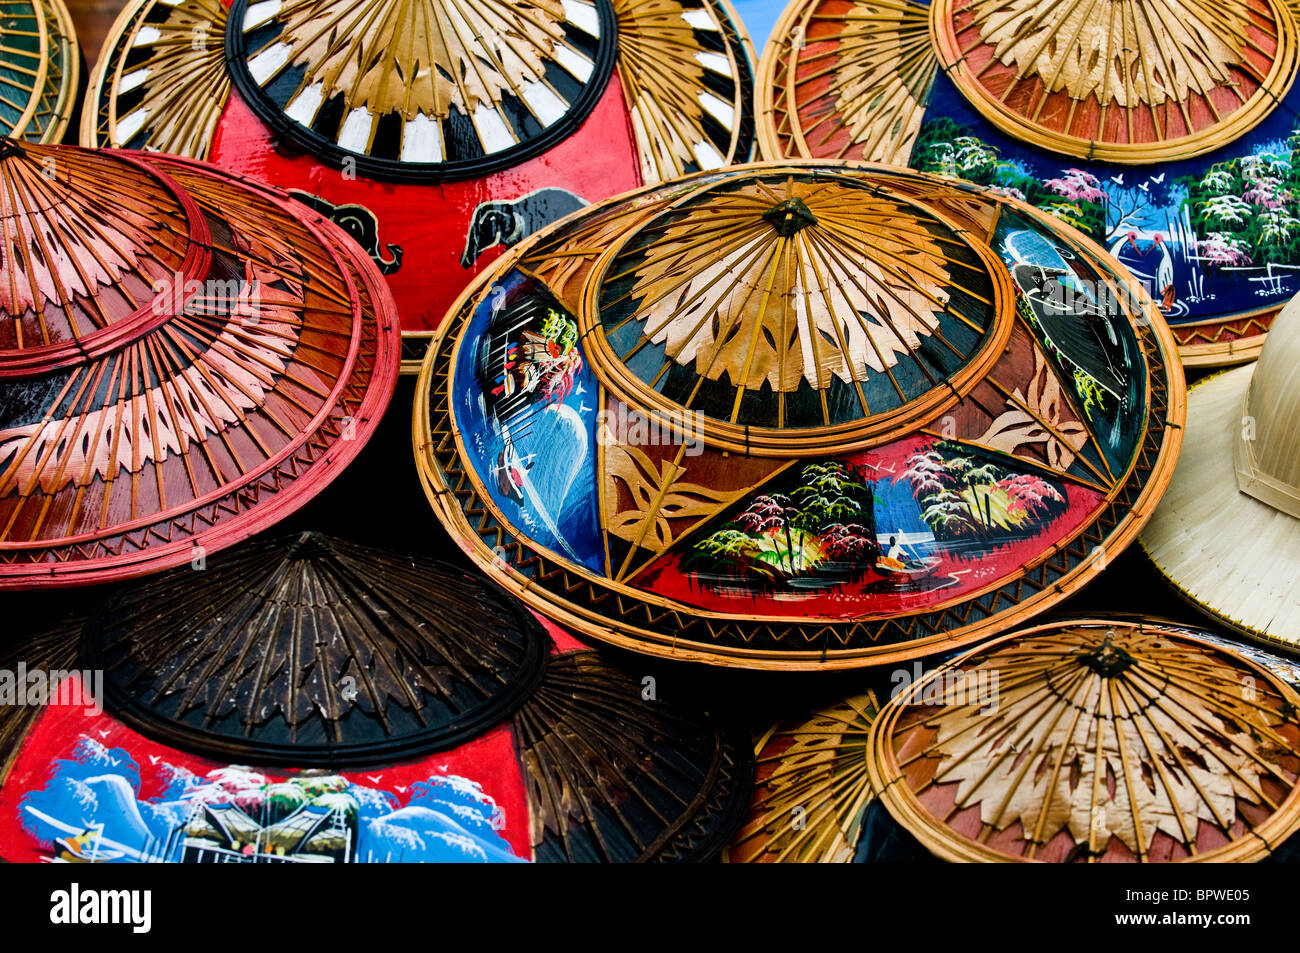 Colorati cappelli tailandese in un negozio di souvenir in Thailandia. Foto Stock